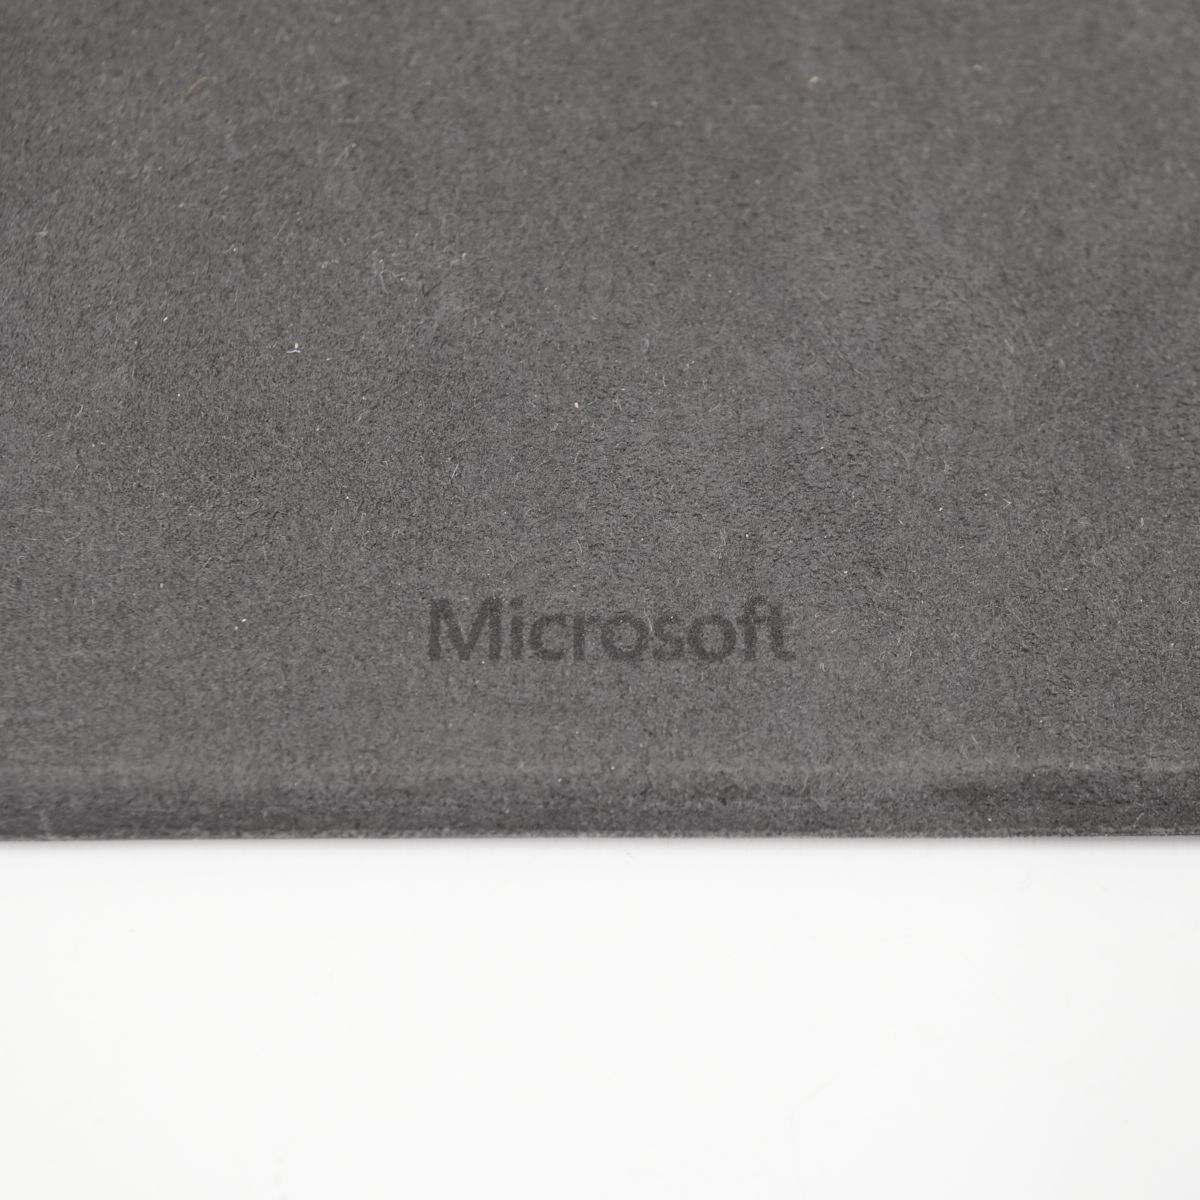 surface Pro キーボード USED品 タイプカバー MODEL 1725 ブラック 黒 マイクロソフト Microsoft 完動品 V0524_画像4